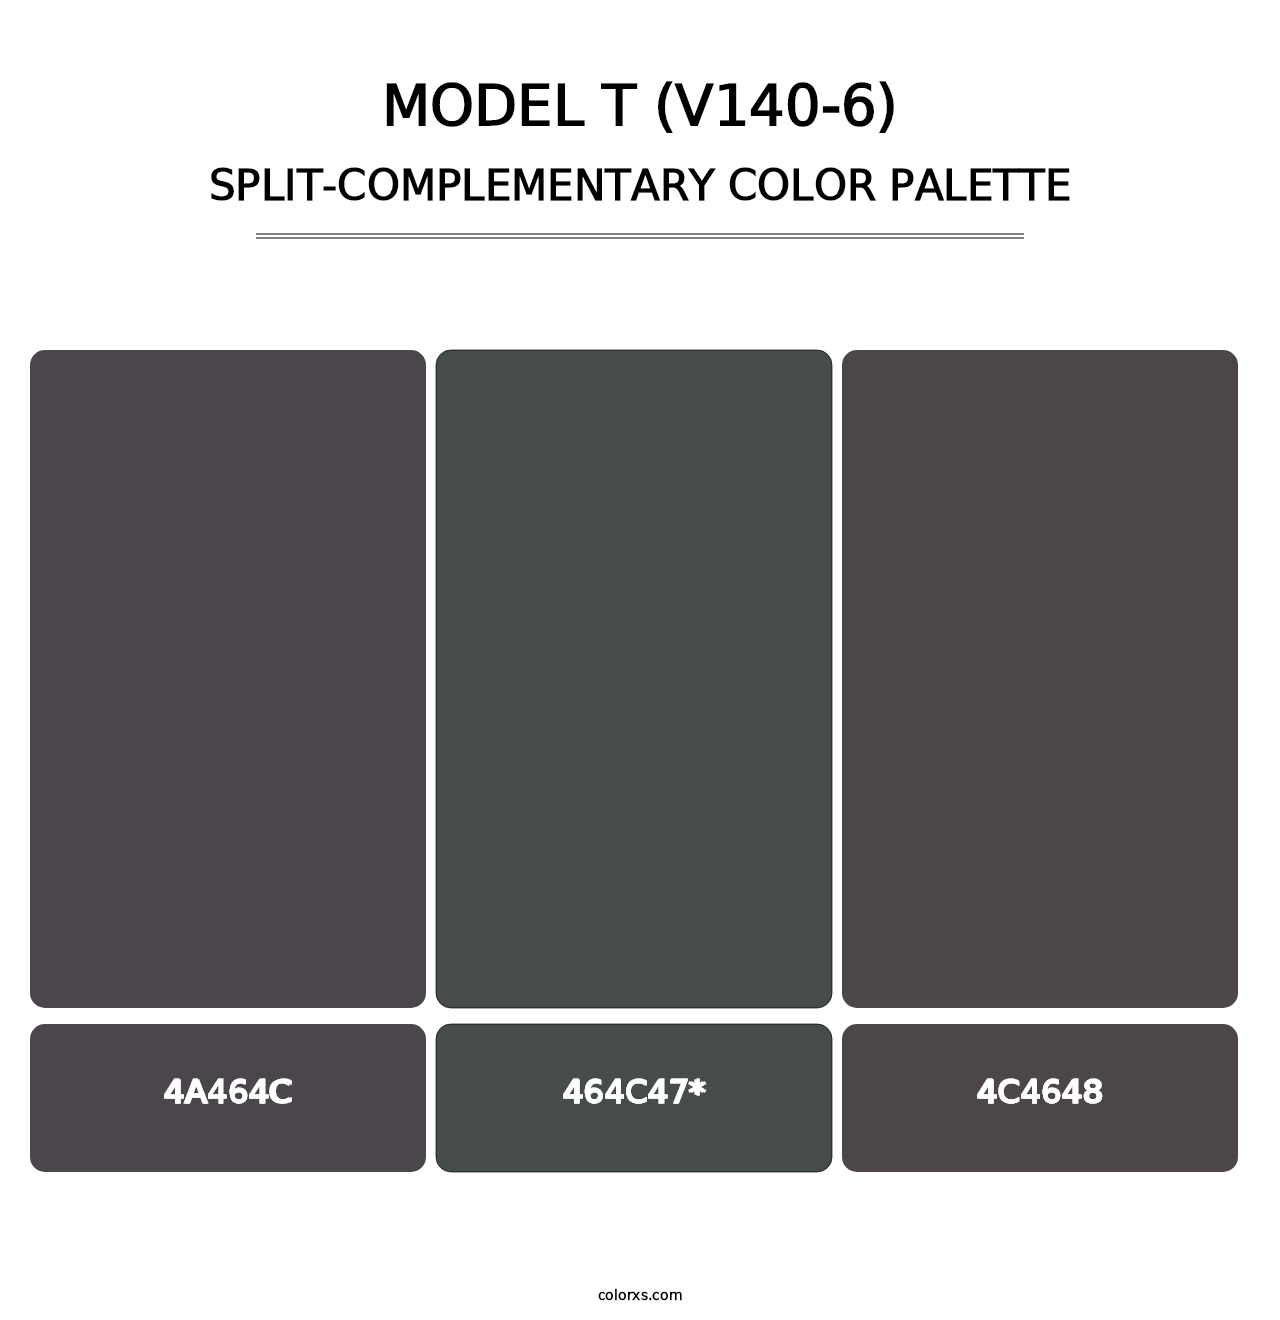 Model T (V140-6) - Split-Complementary Color Palette